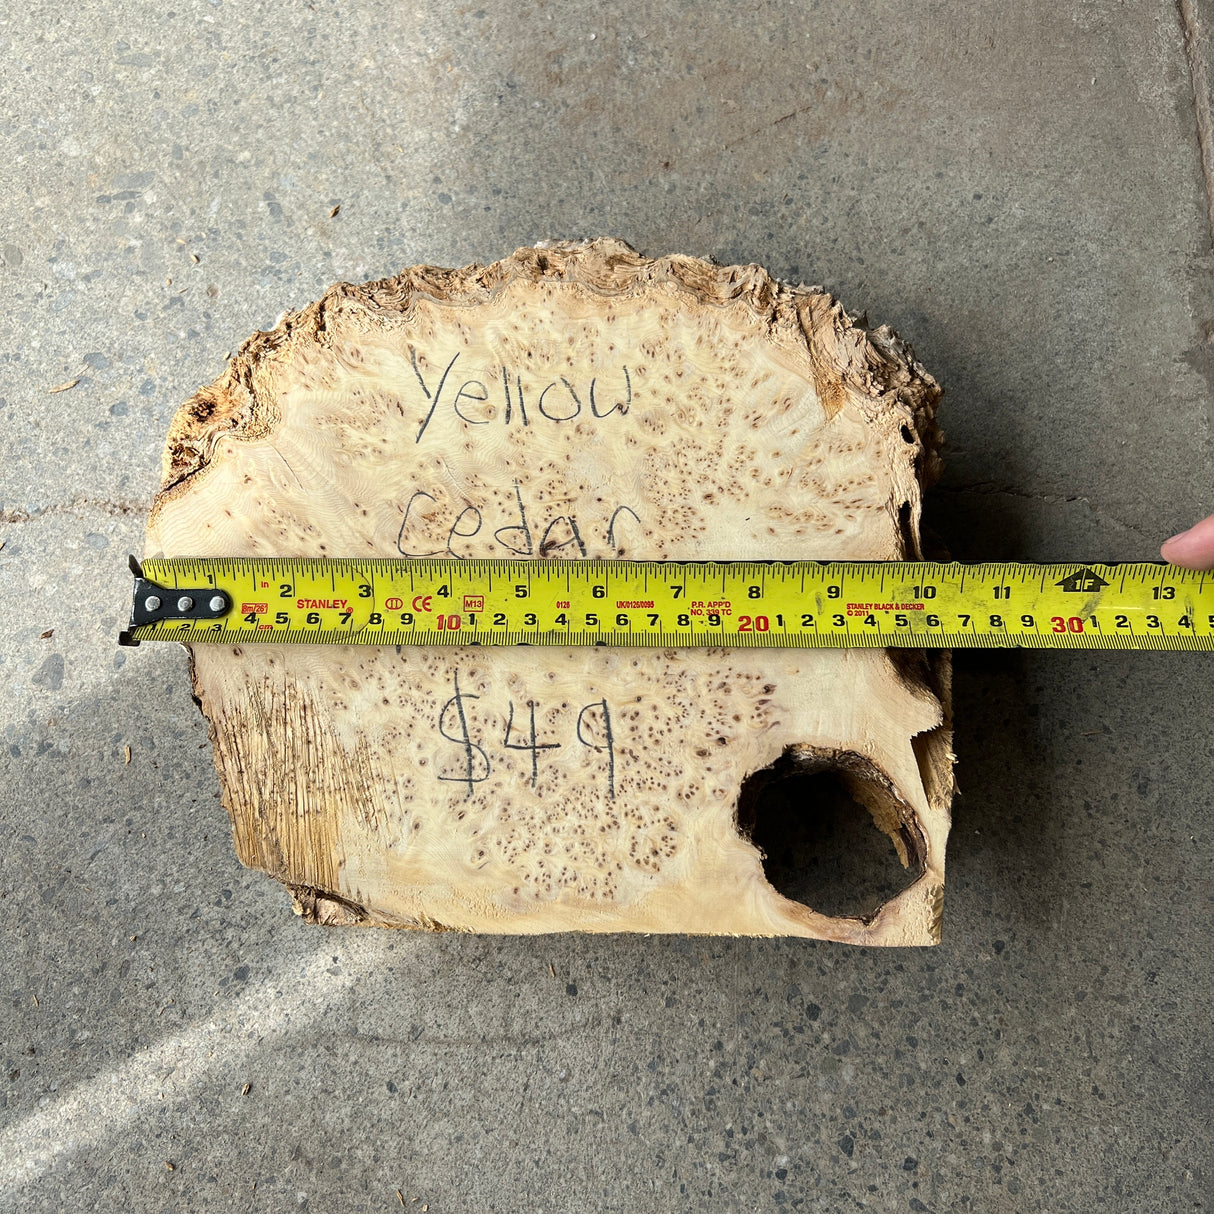 Yellow Cedar Burl 10”x9”x2.5”